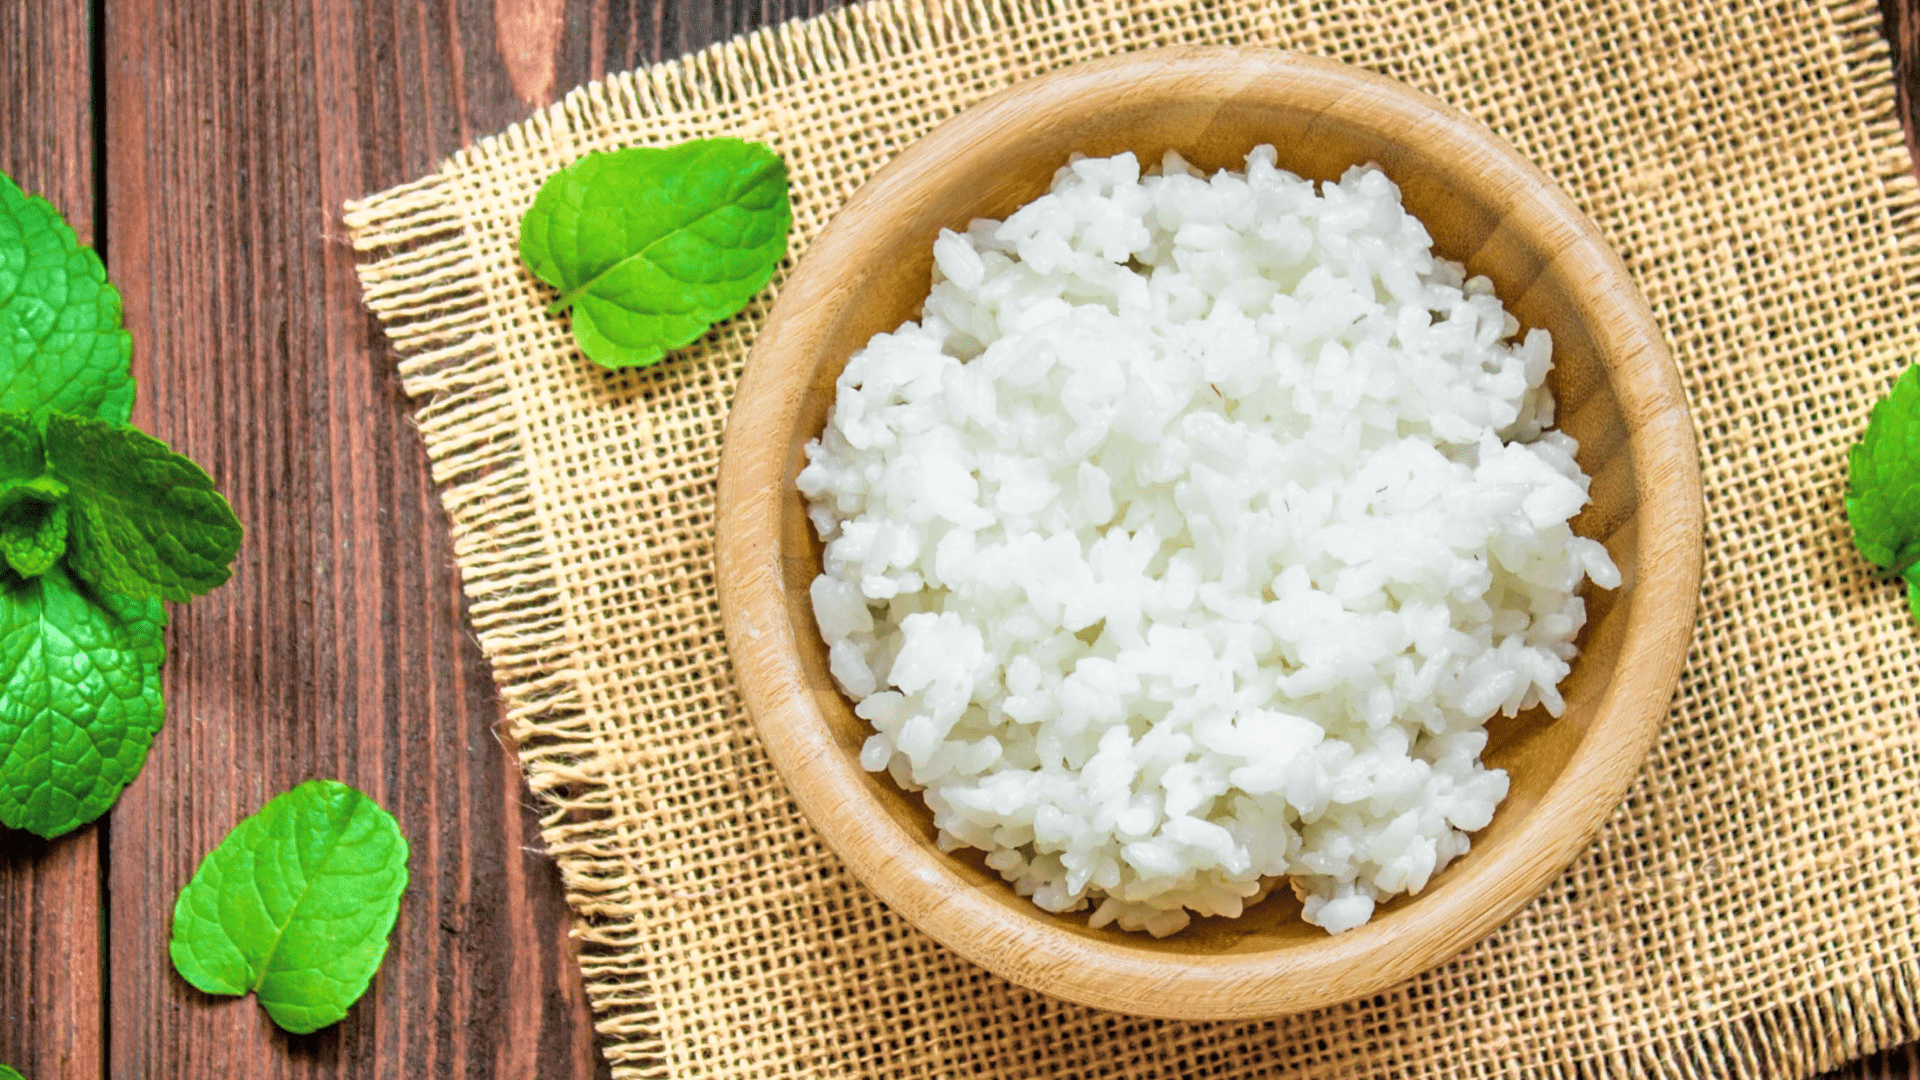 Meilleur cuiseur à riz pour riz gluant | Top 4 pour un riz gluant cuit uniformément